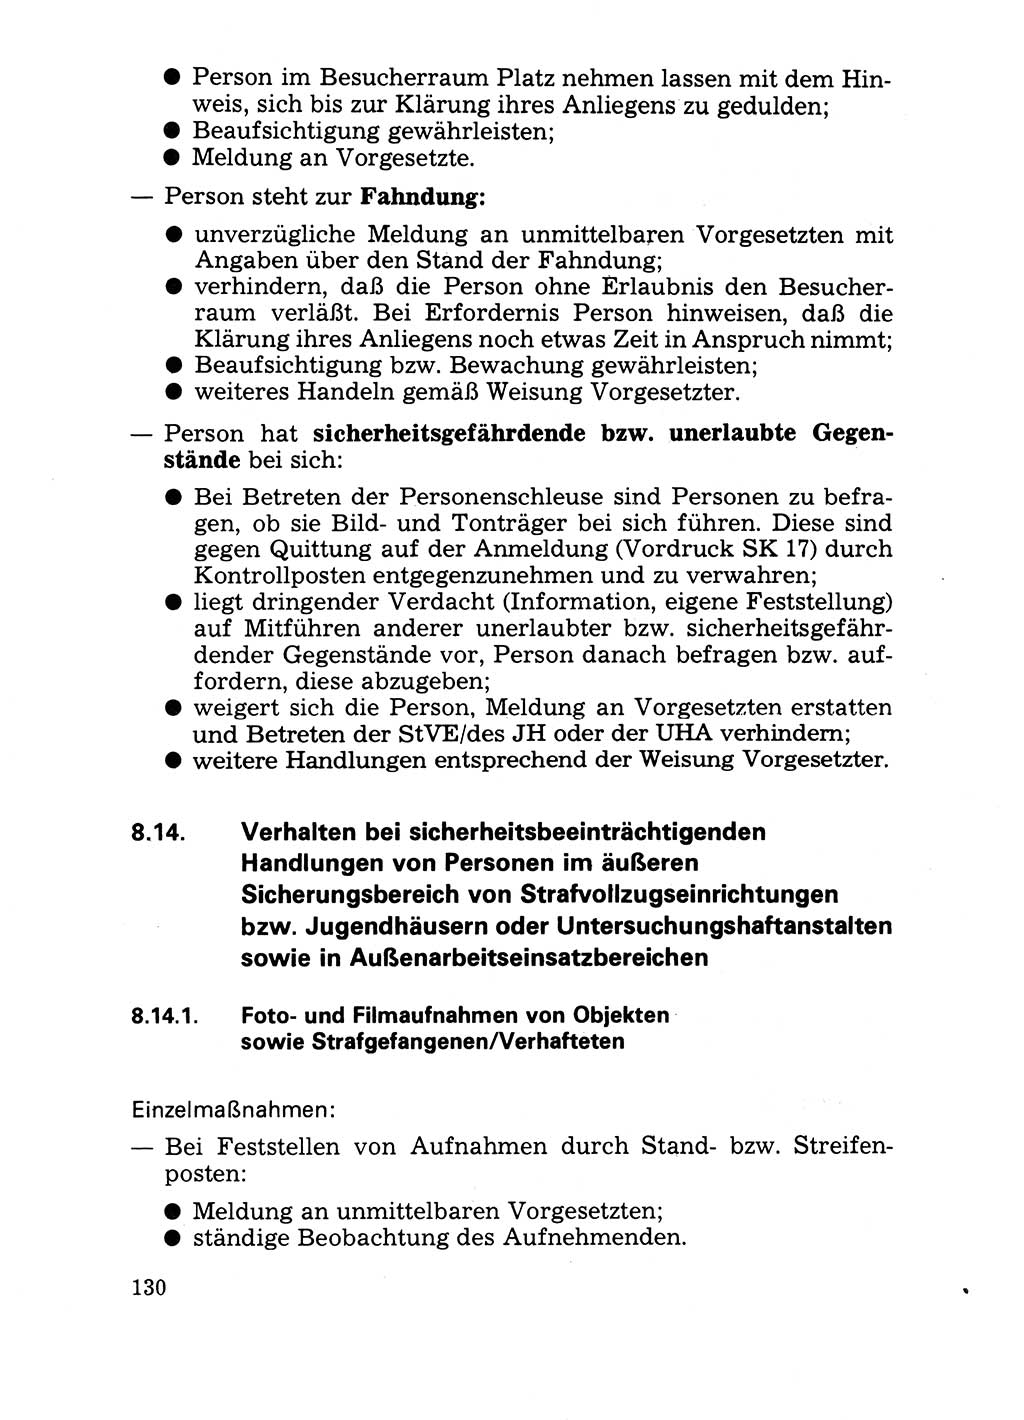 Handbuch für operative Dienste, Abteilung Strafvollzug (SV) [Ministerium des Innern (MdI) Deutsche Demokratische Republik (DDR)] 1981, Seite 130 (Hb. op. D. Abt. SV MdI DDR 1981, S. 130)